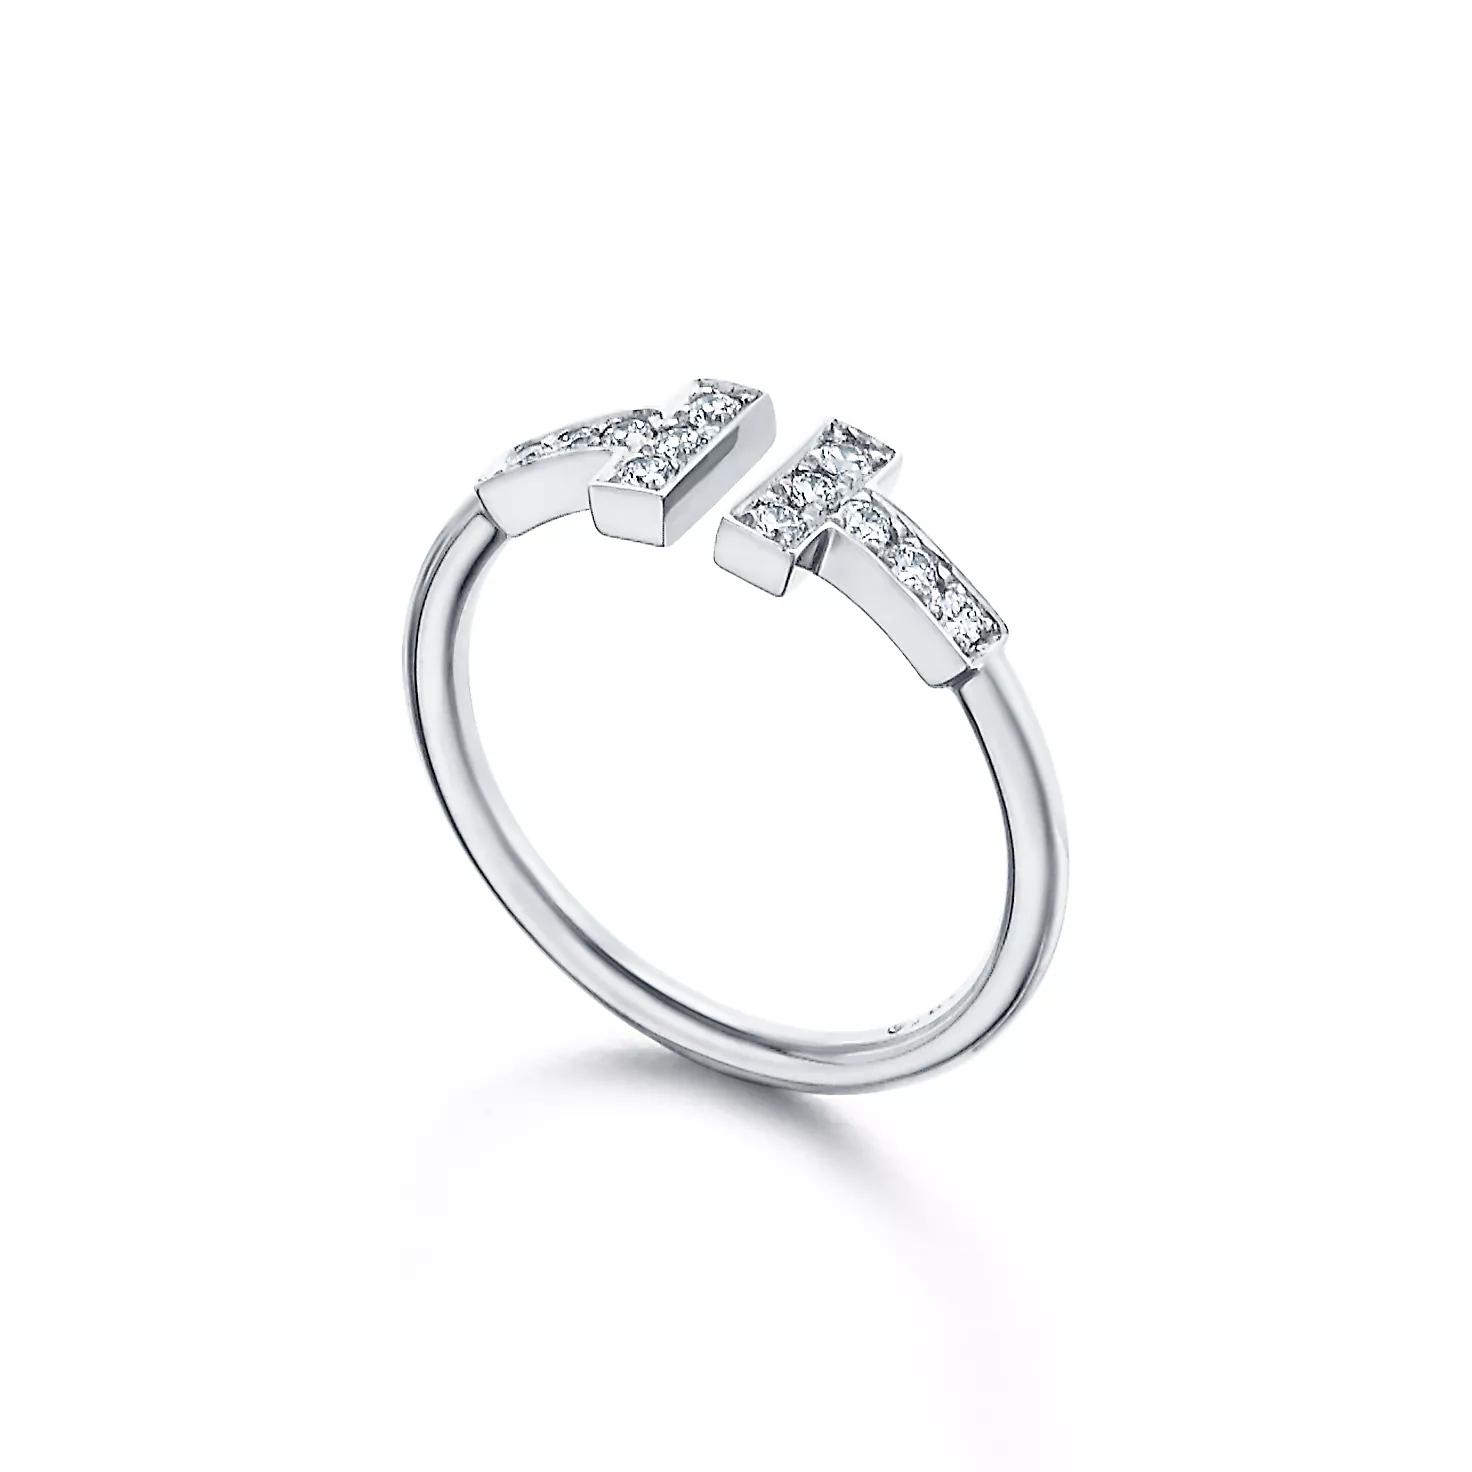 Tiffany T:다이아몬드 와이어 링, 18K 화이트 골드 이미지 번호 1